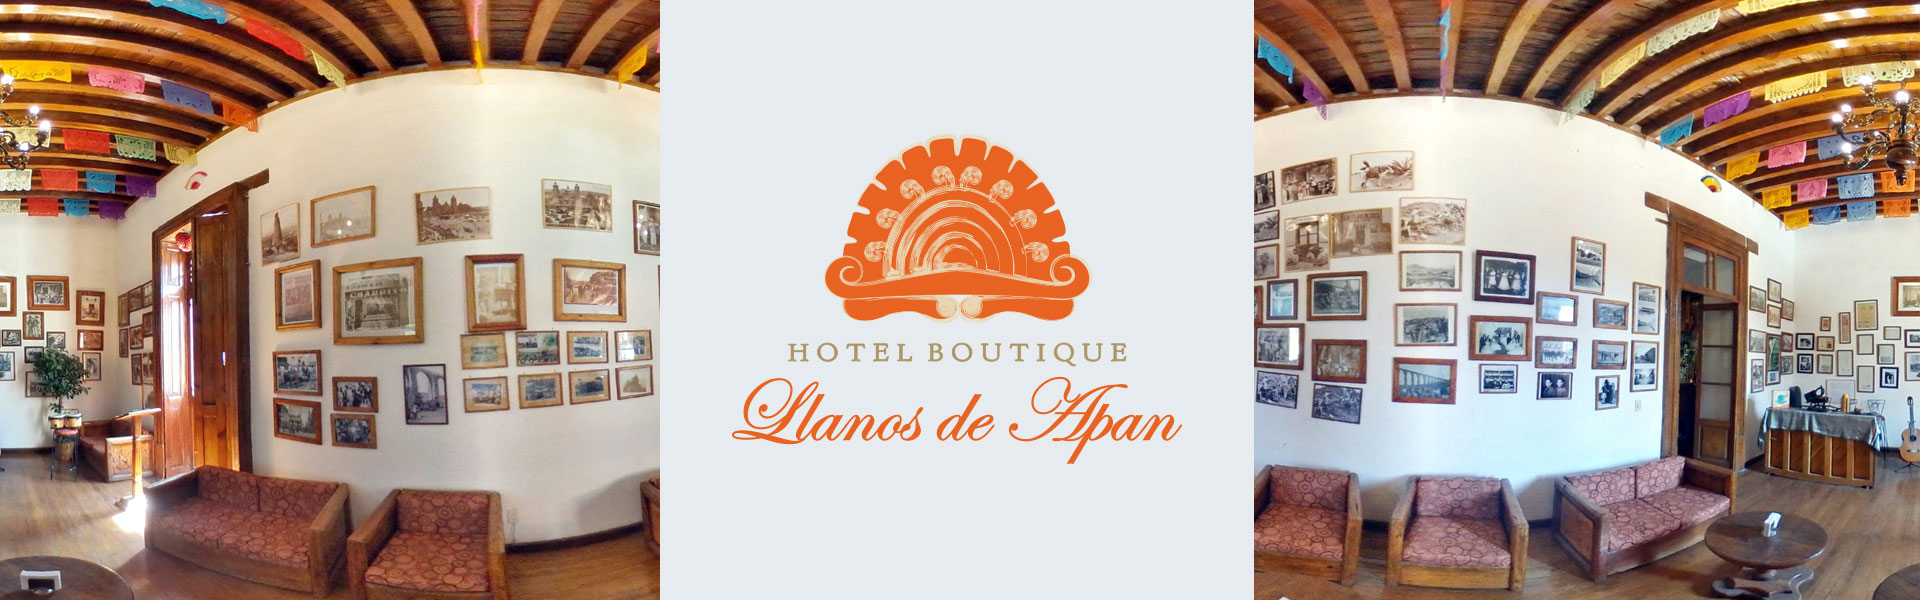 Hotel Boutique Llanos de Apan